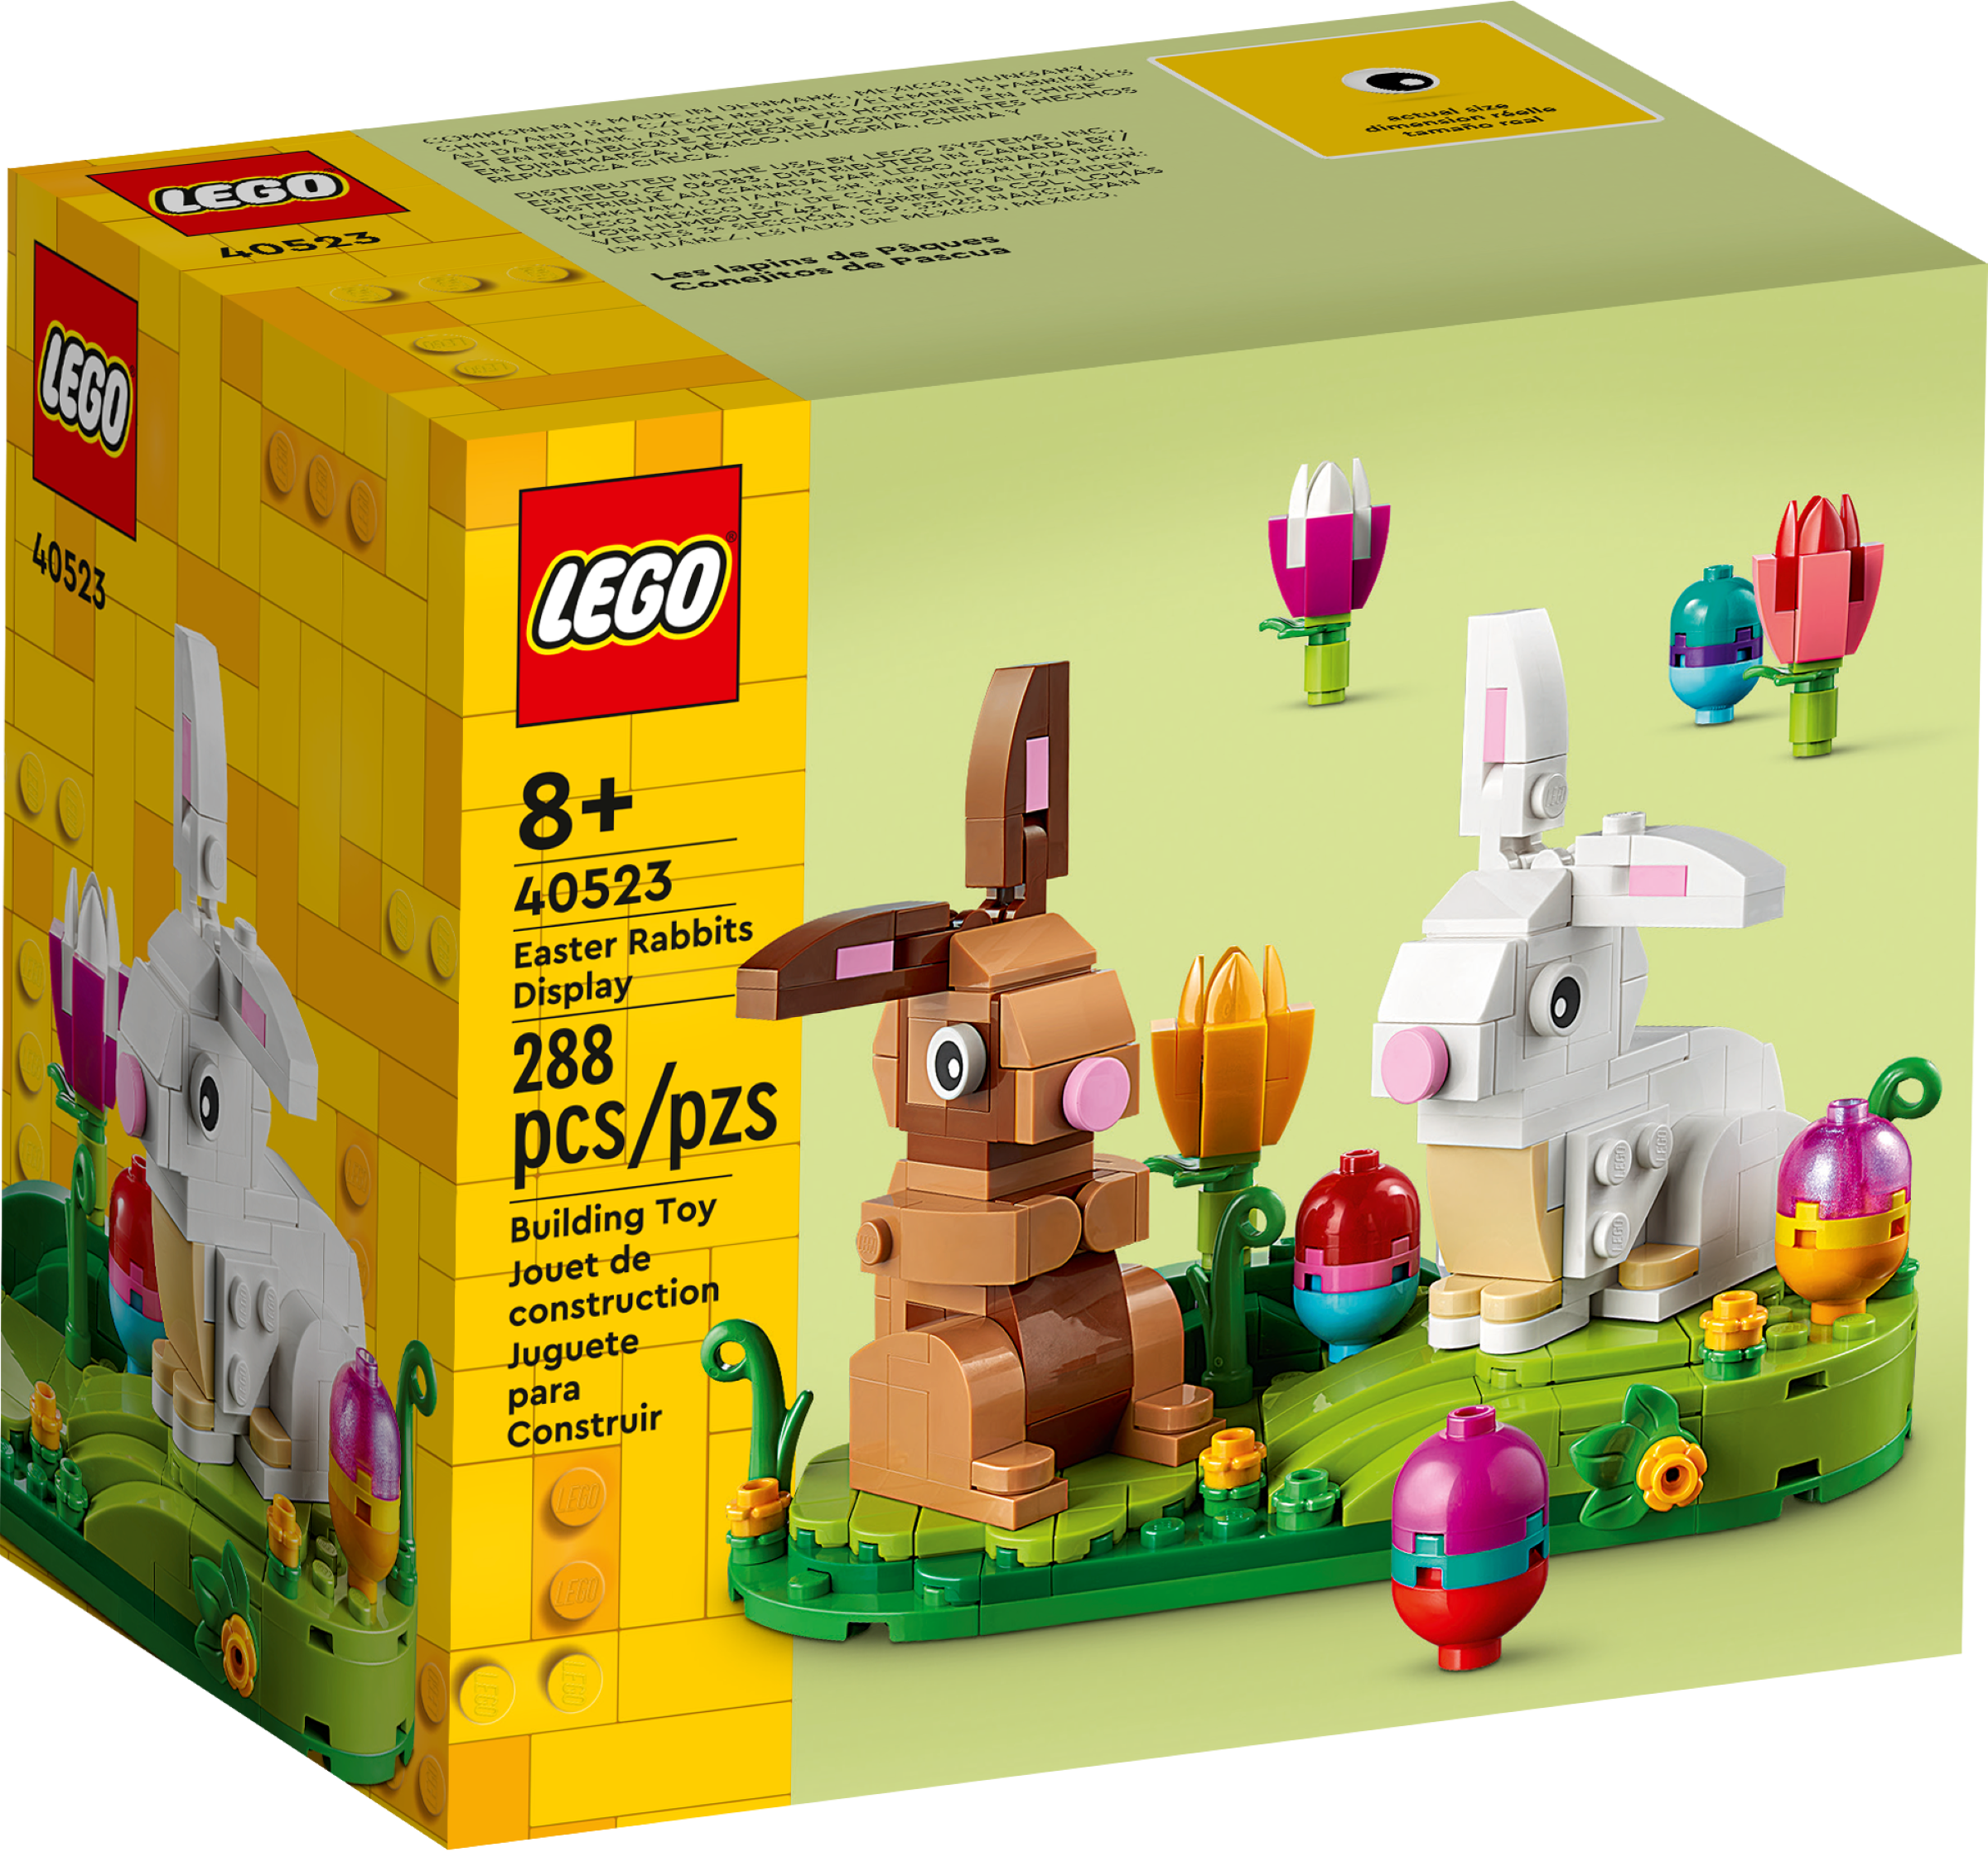 Juego de LEGO Conejitos de Pascua (40523) listado en página web